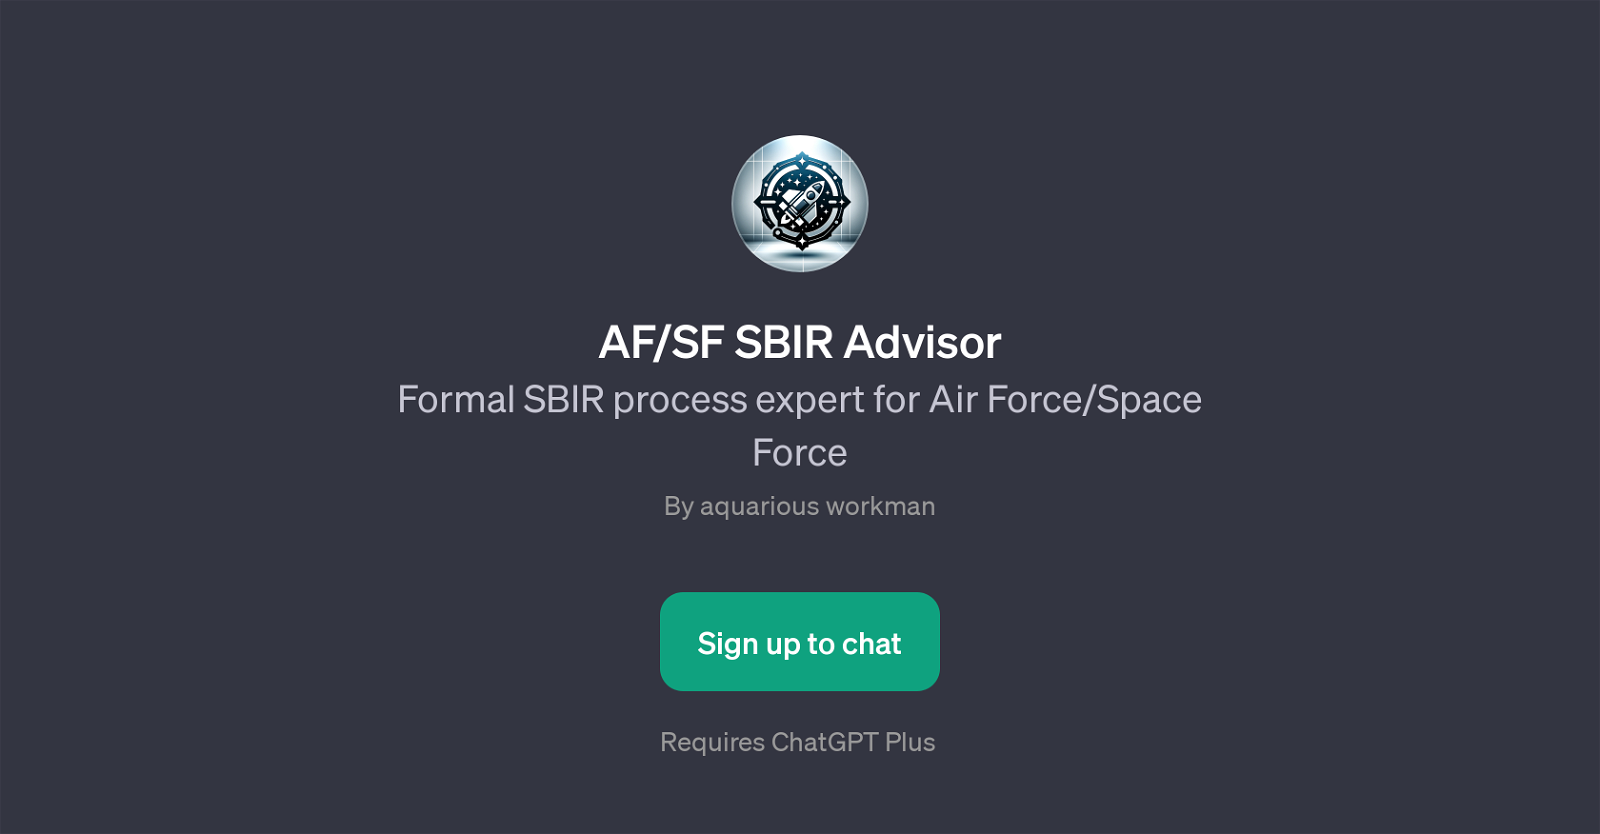 AF/SF SBIR Advisor website